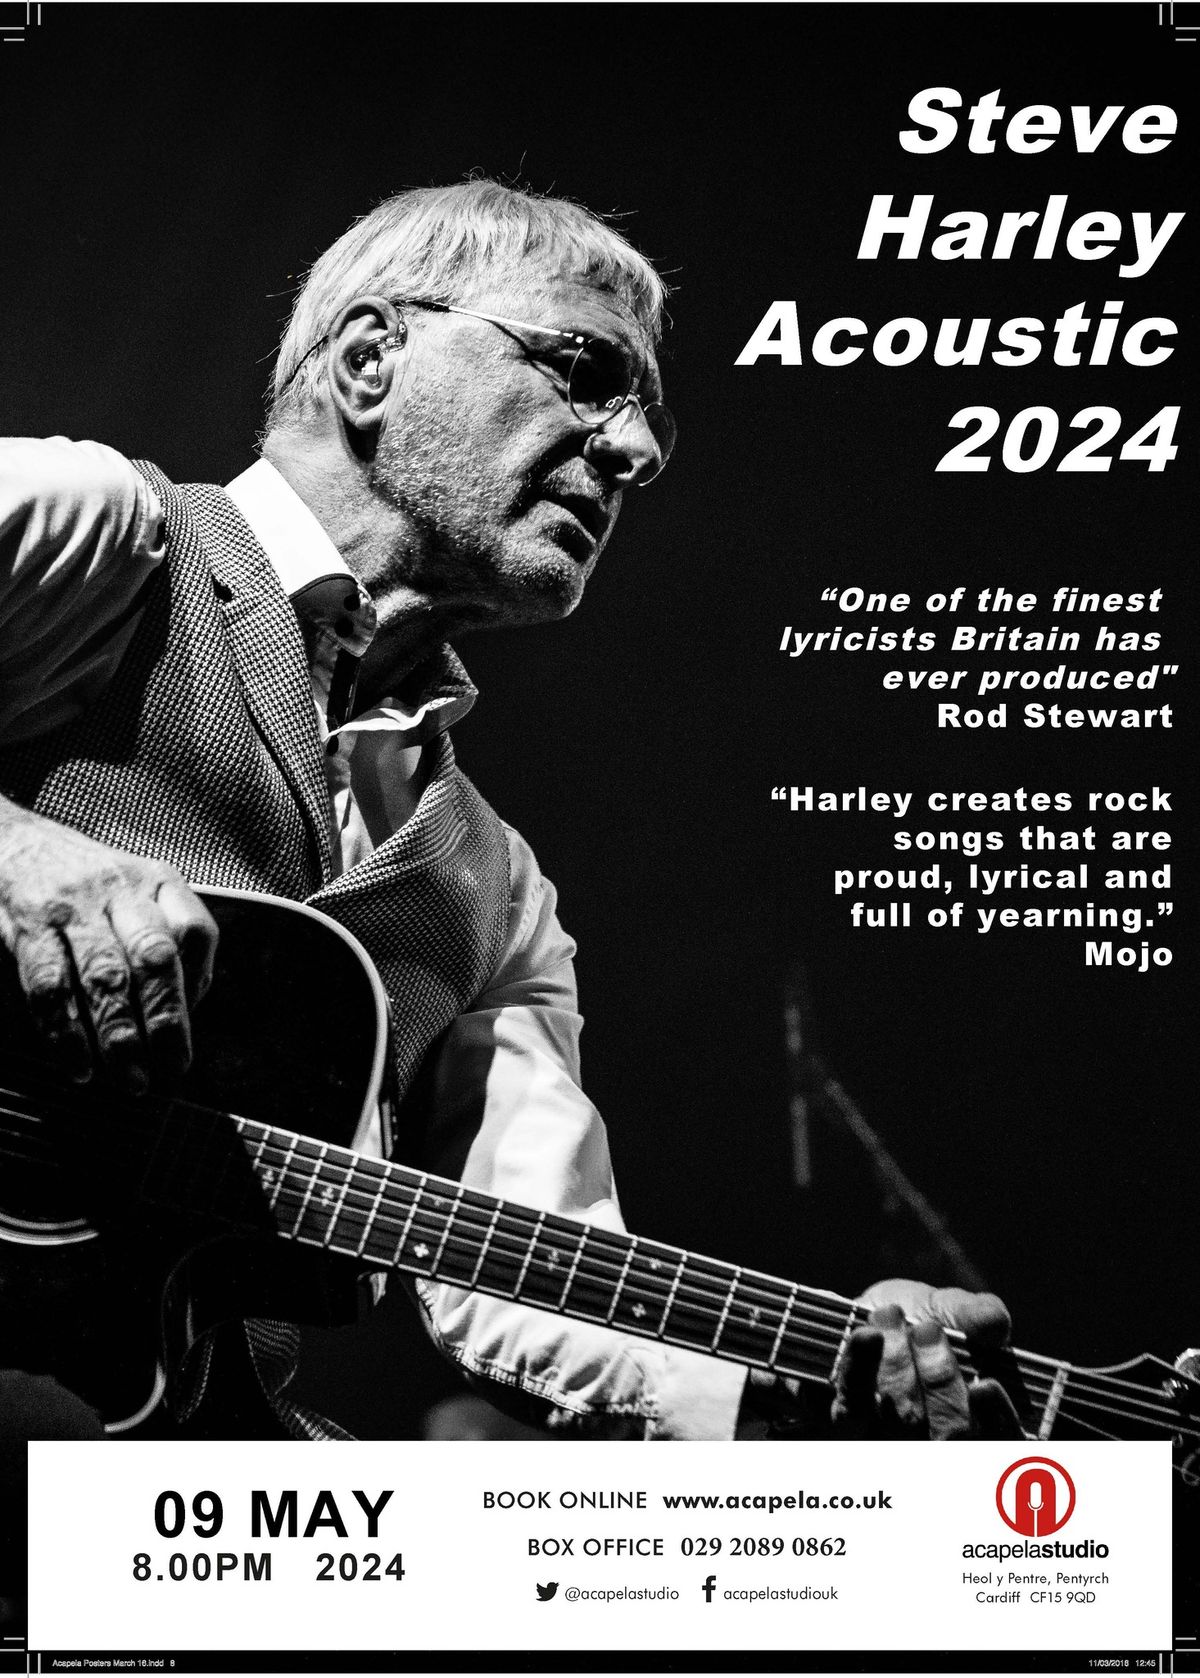 Steve Harley Acoustic 2024